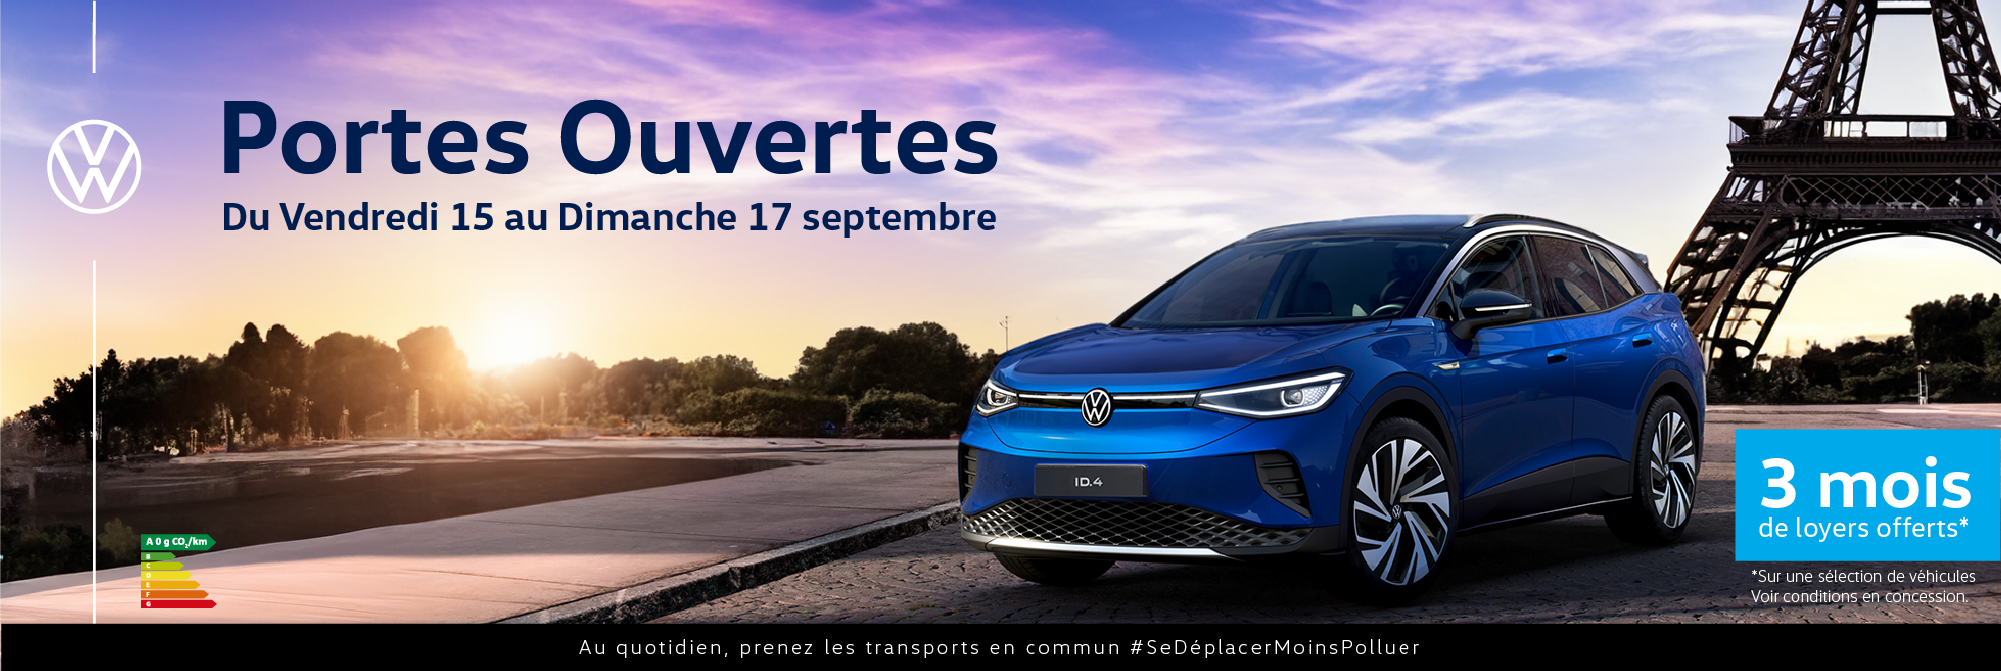 Volkswagen Paris 15 - Journées Portes Ouvertes du 15 au 17 septembre 